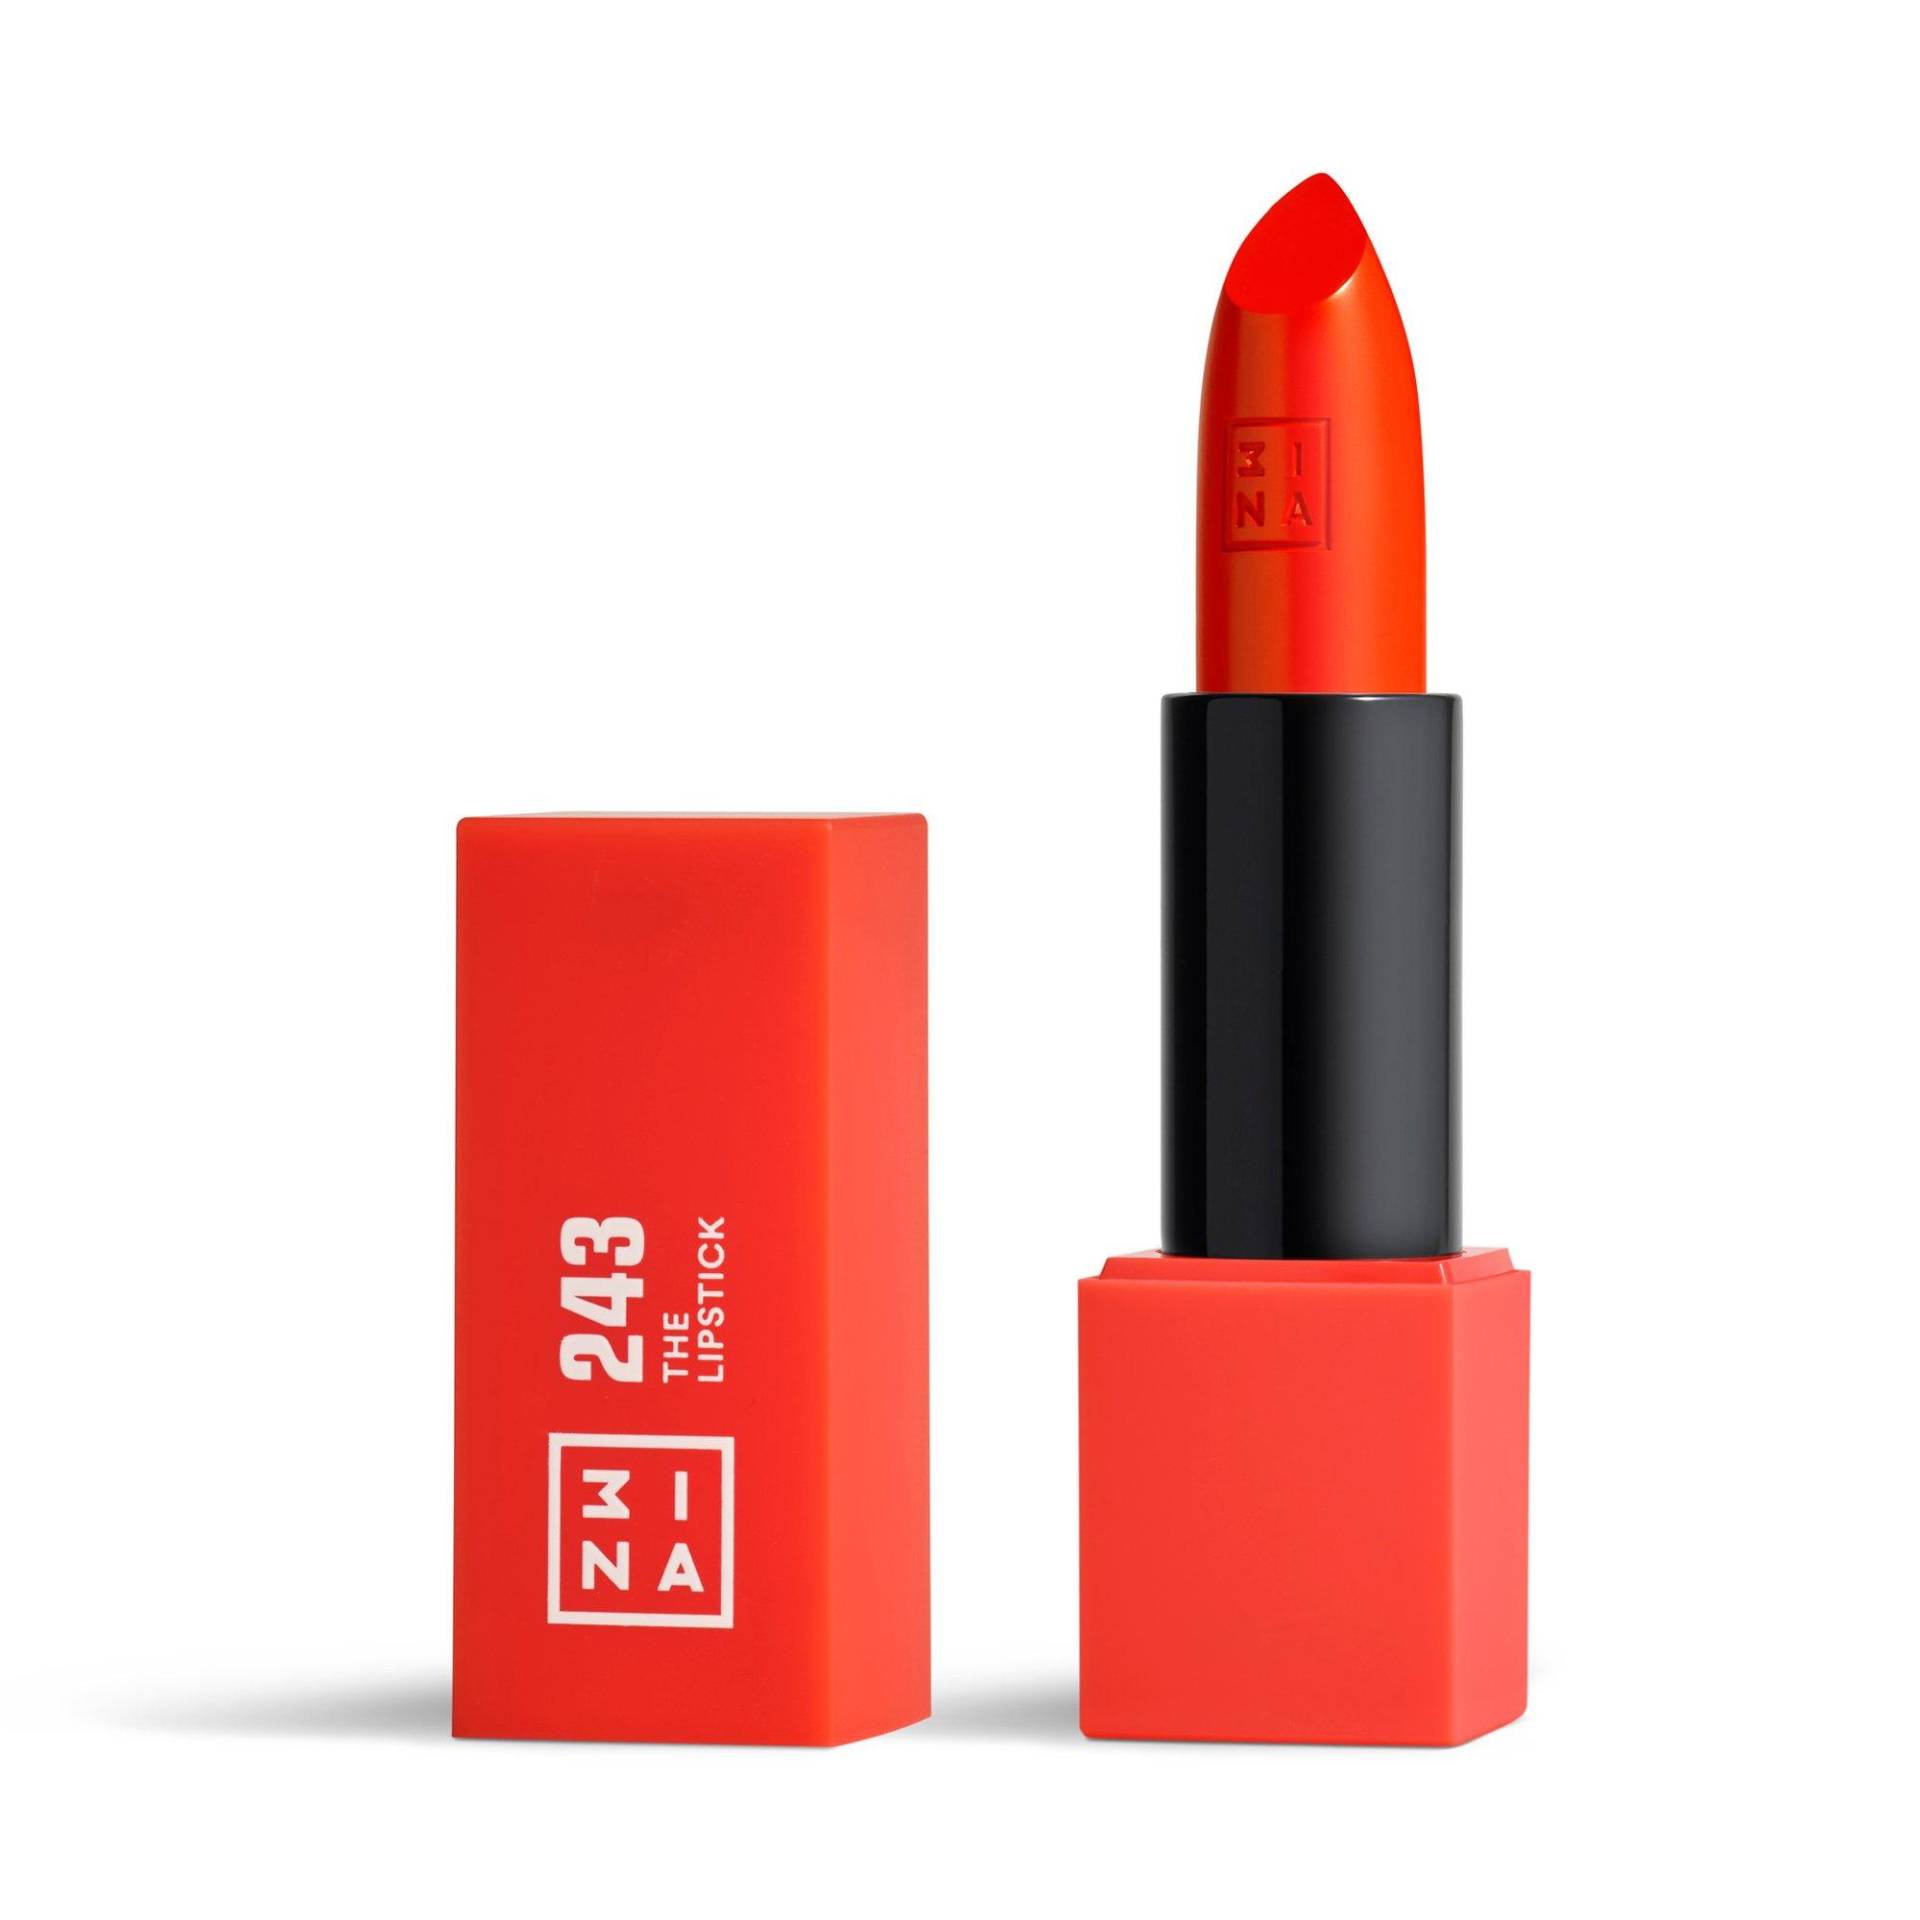 The Lipstick Damen  4.5G von 3INA